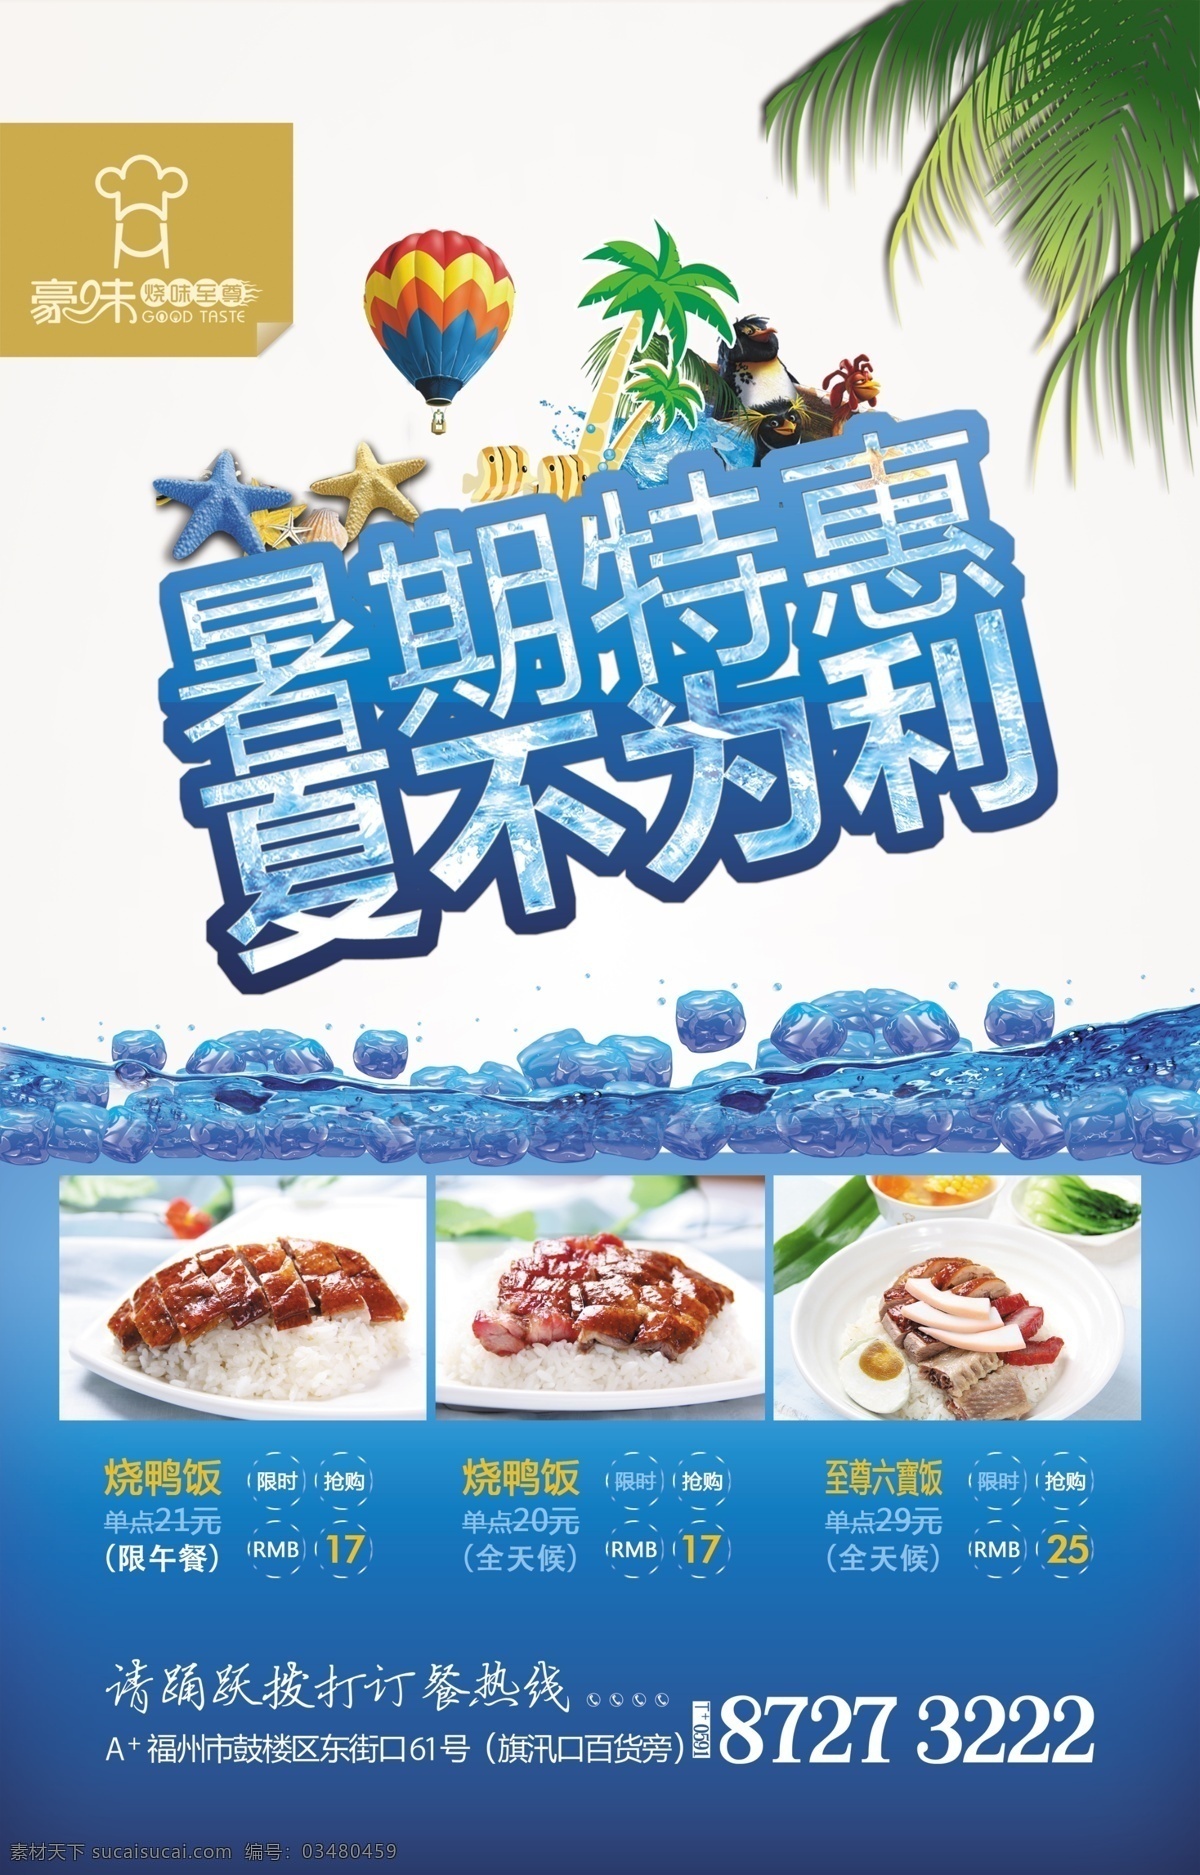 暑期 特惠 夏不为利 海报 热气球 椰子树 叶子 套餐 水波 海星 招贴画 招贴 活动广告 广告设计模板 源文件